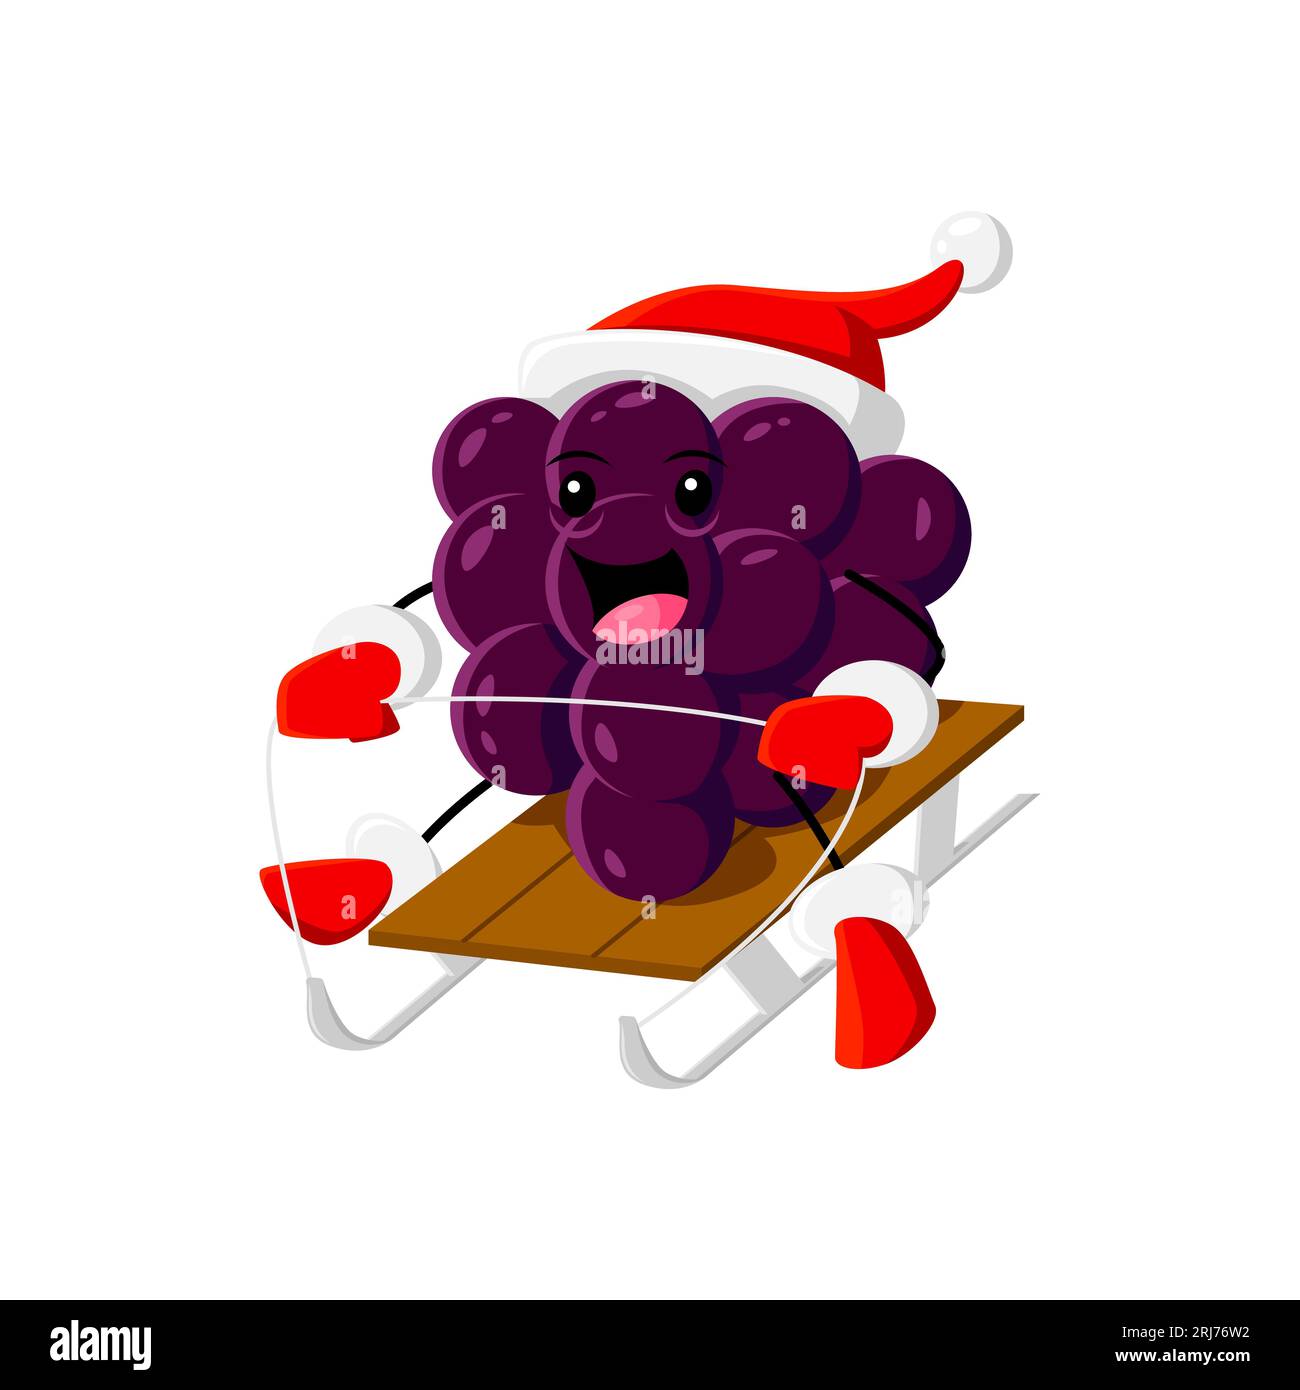 Dessin animé noël le personnage de grappes de raisin Berry traîne joyeusement à travers un pays des merveilles de l'hiver, apportant sourires et esprit festif à tous. Isolé Illustration de Vecteur